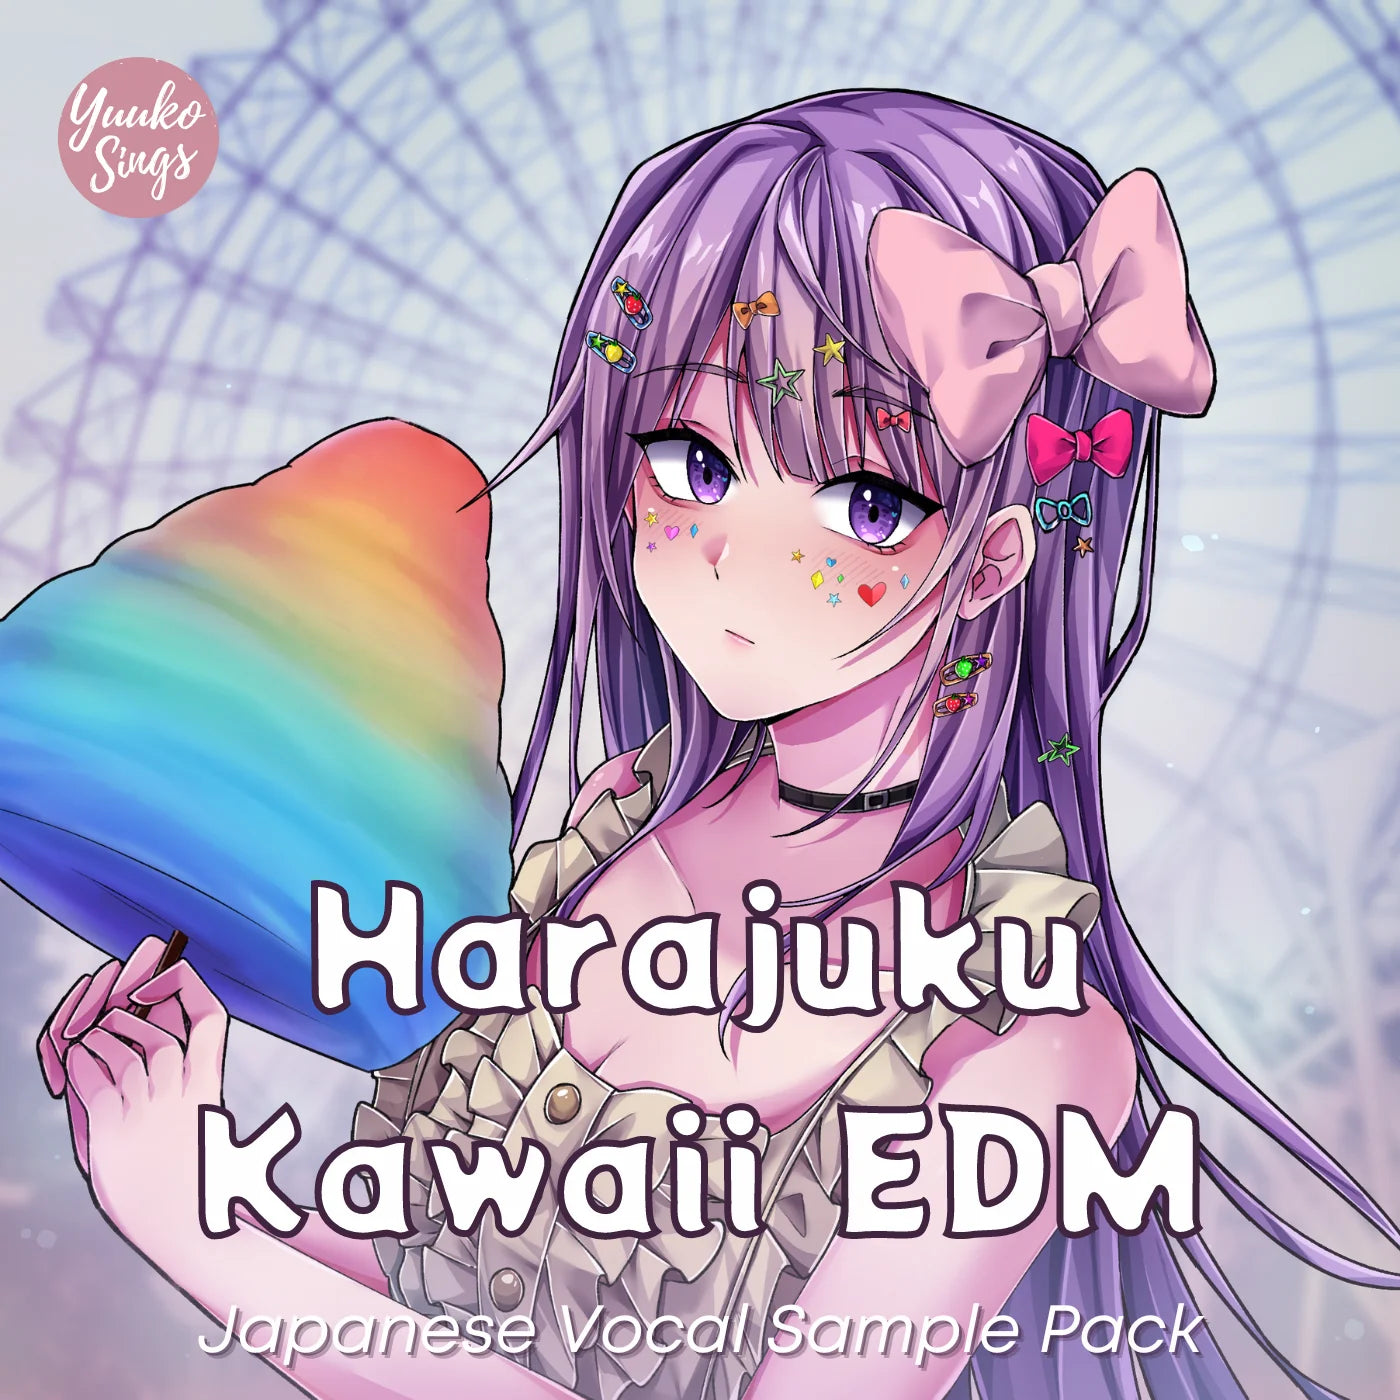 Paquete de muestras vocales japonesas Harajuku Kawaii EDM |日本語ボーカルサンプル